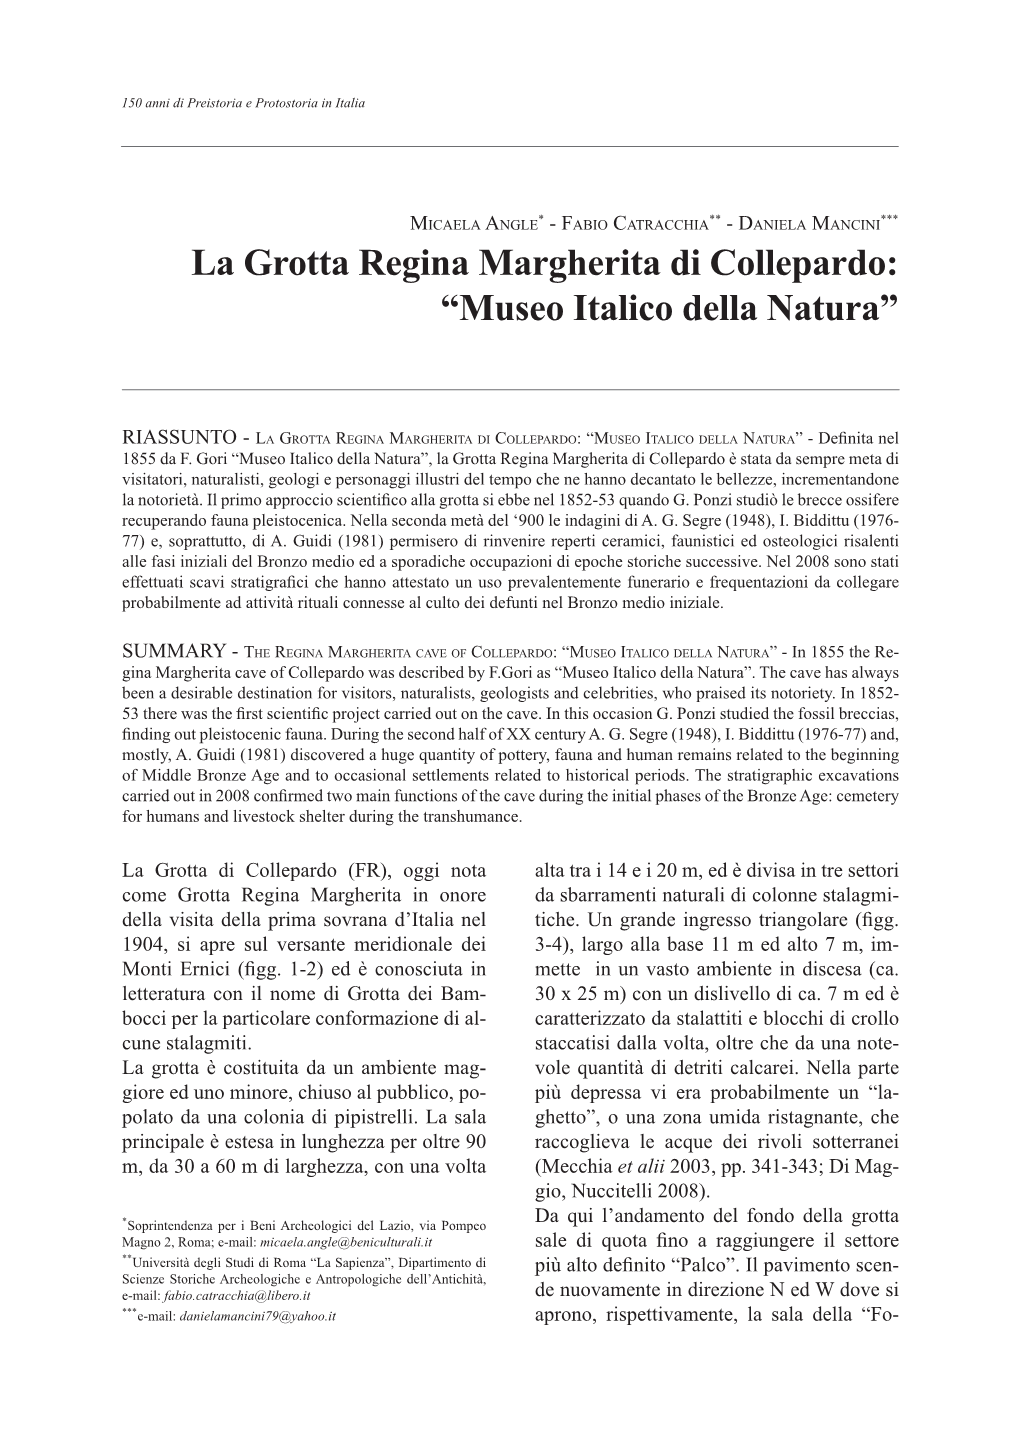 La Grotta Regina Margherita Di Collepardo: “Museo Italico Della Natura”